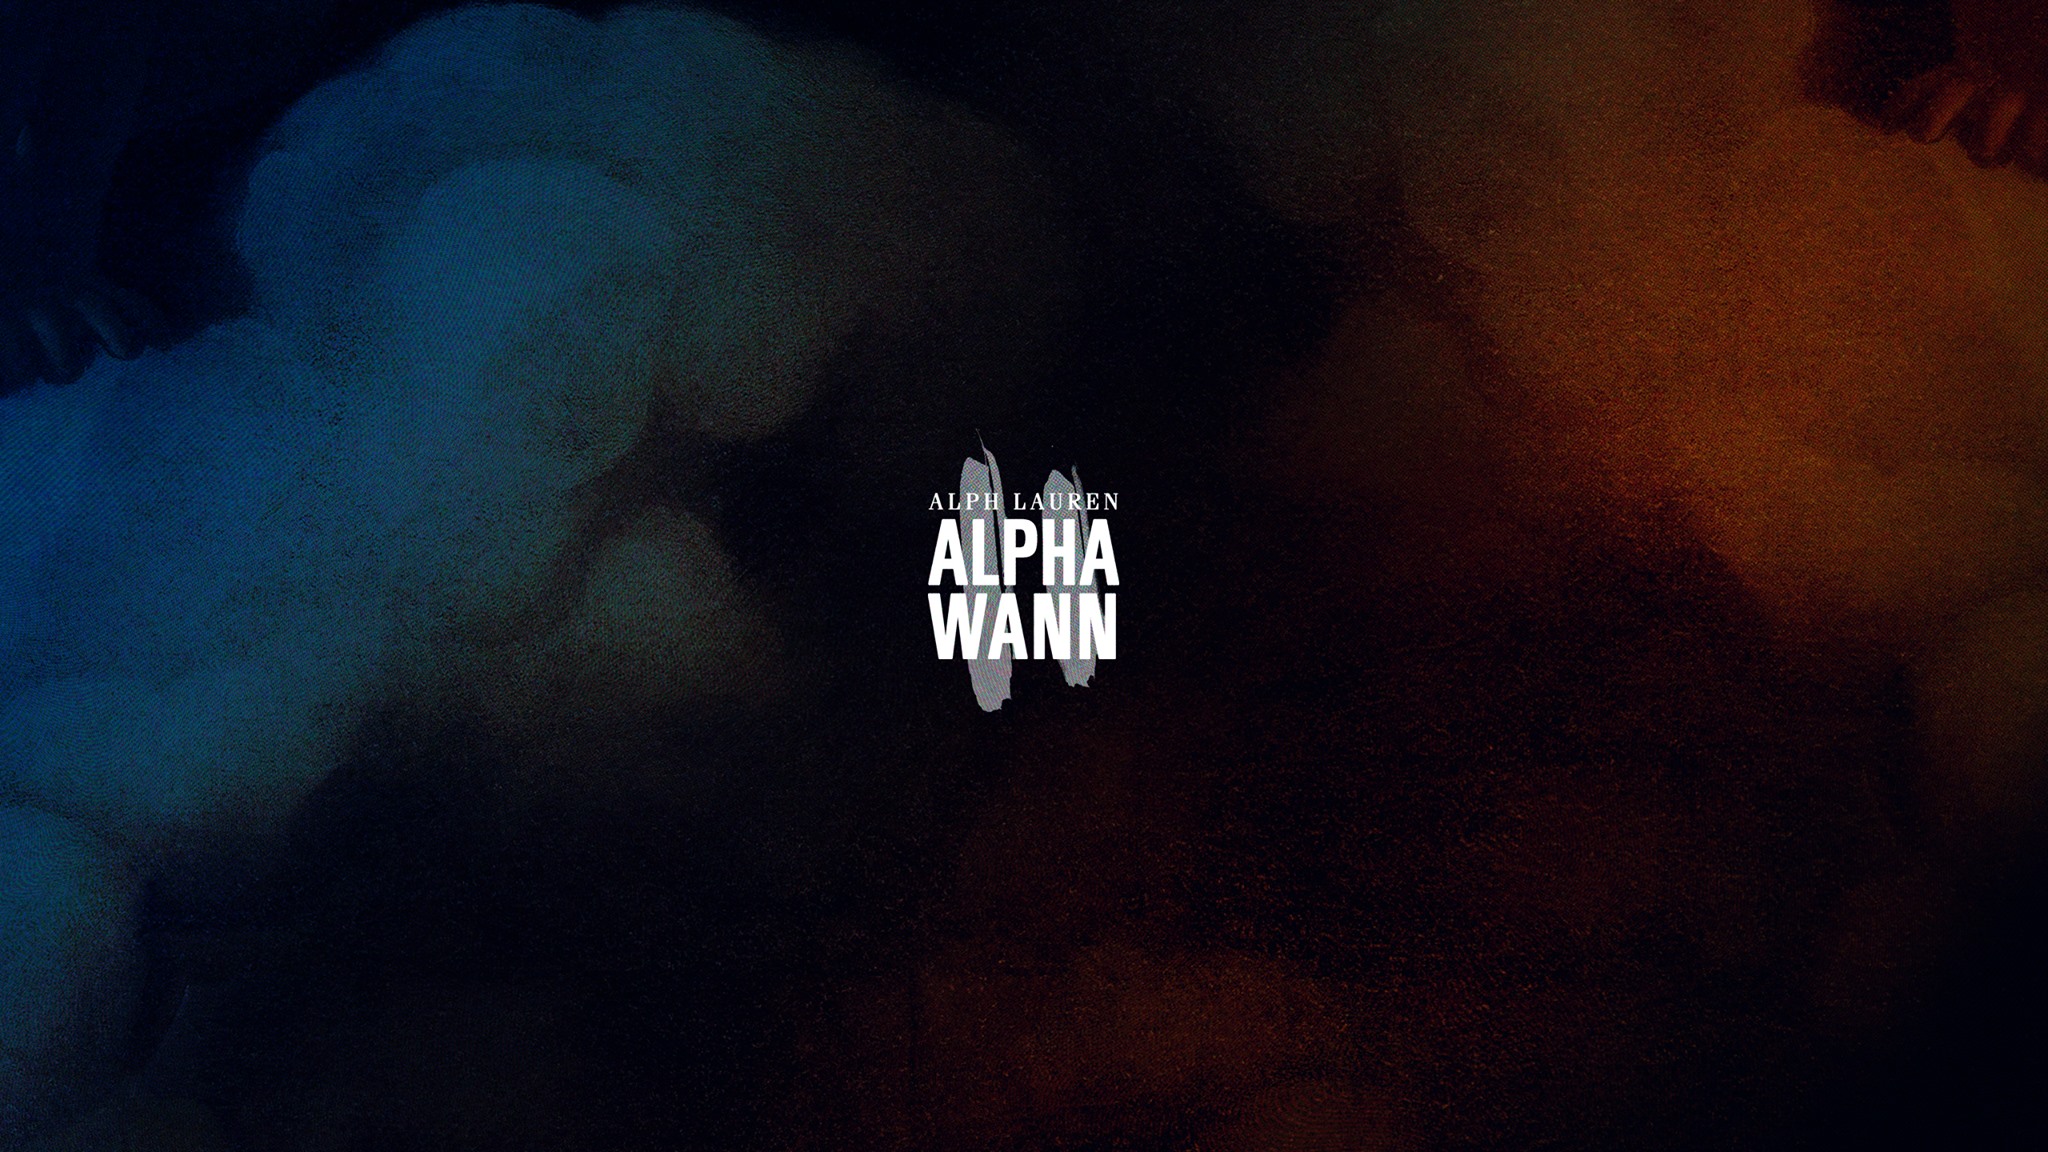 Le nouveau projet «Alph Lauren2» de Alpha Wann est maintenant disponible !